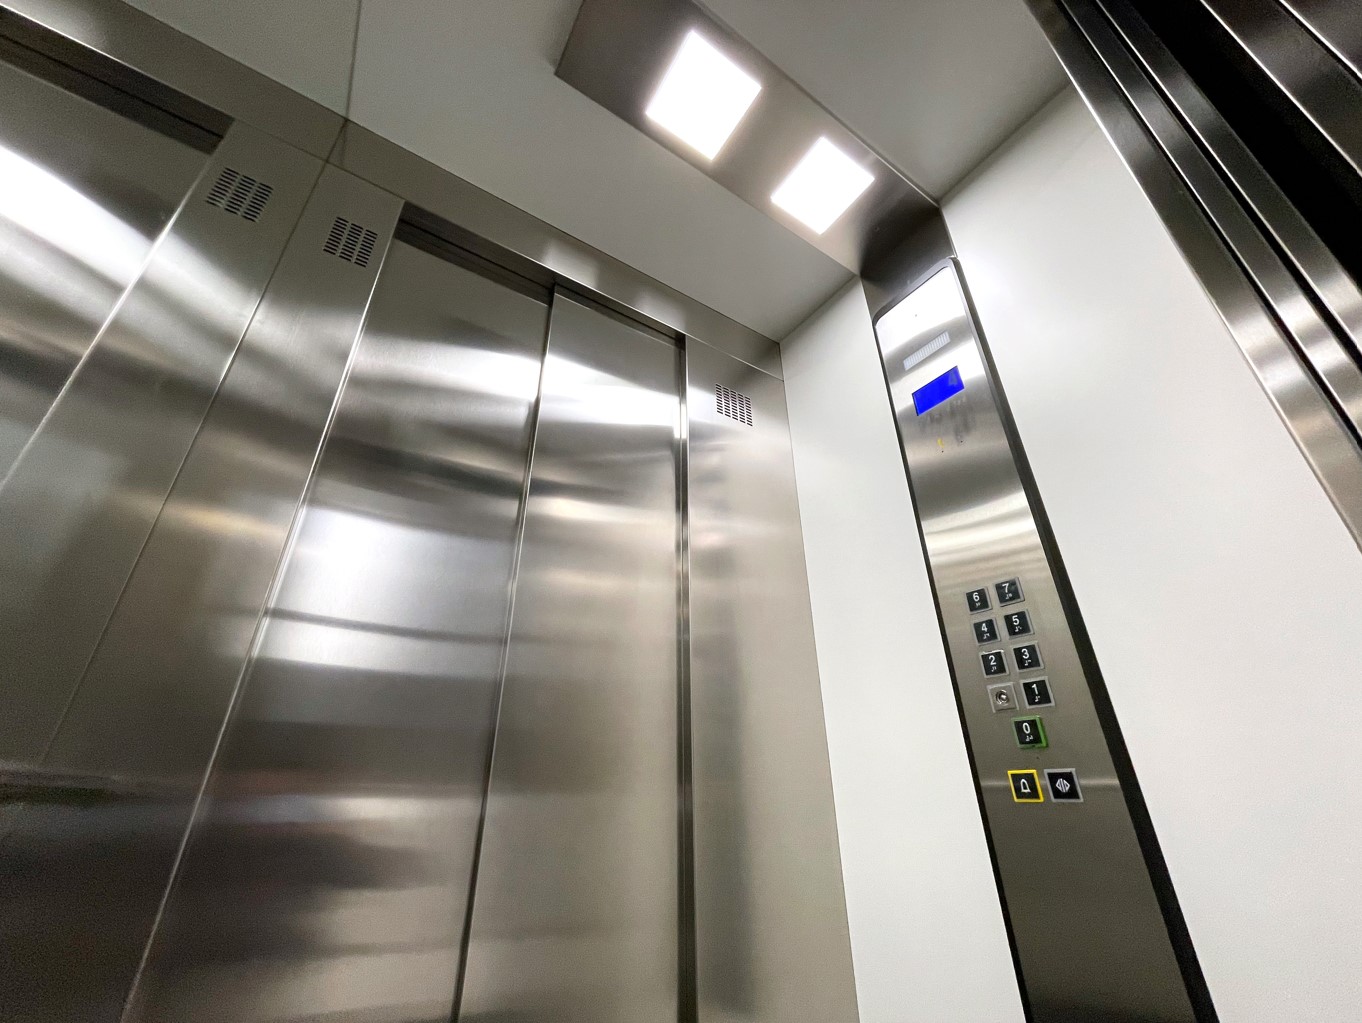 Modernizar la cabina del ascensor permite actualizar su estética con acabados contemporáneos